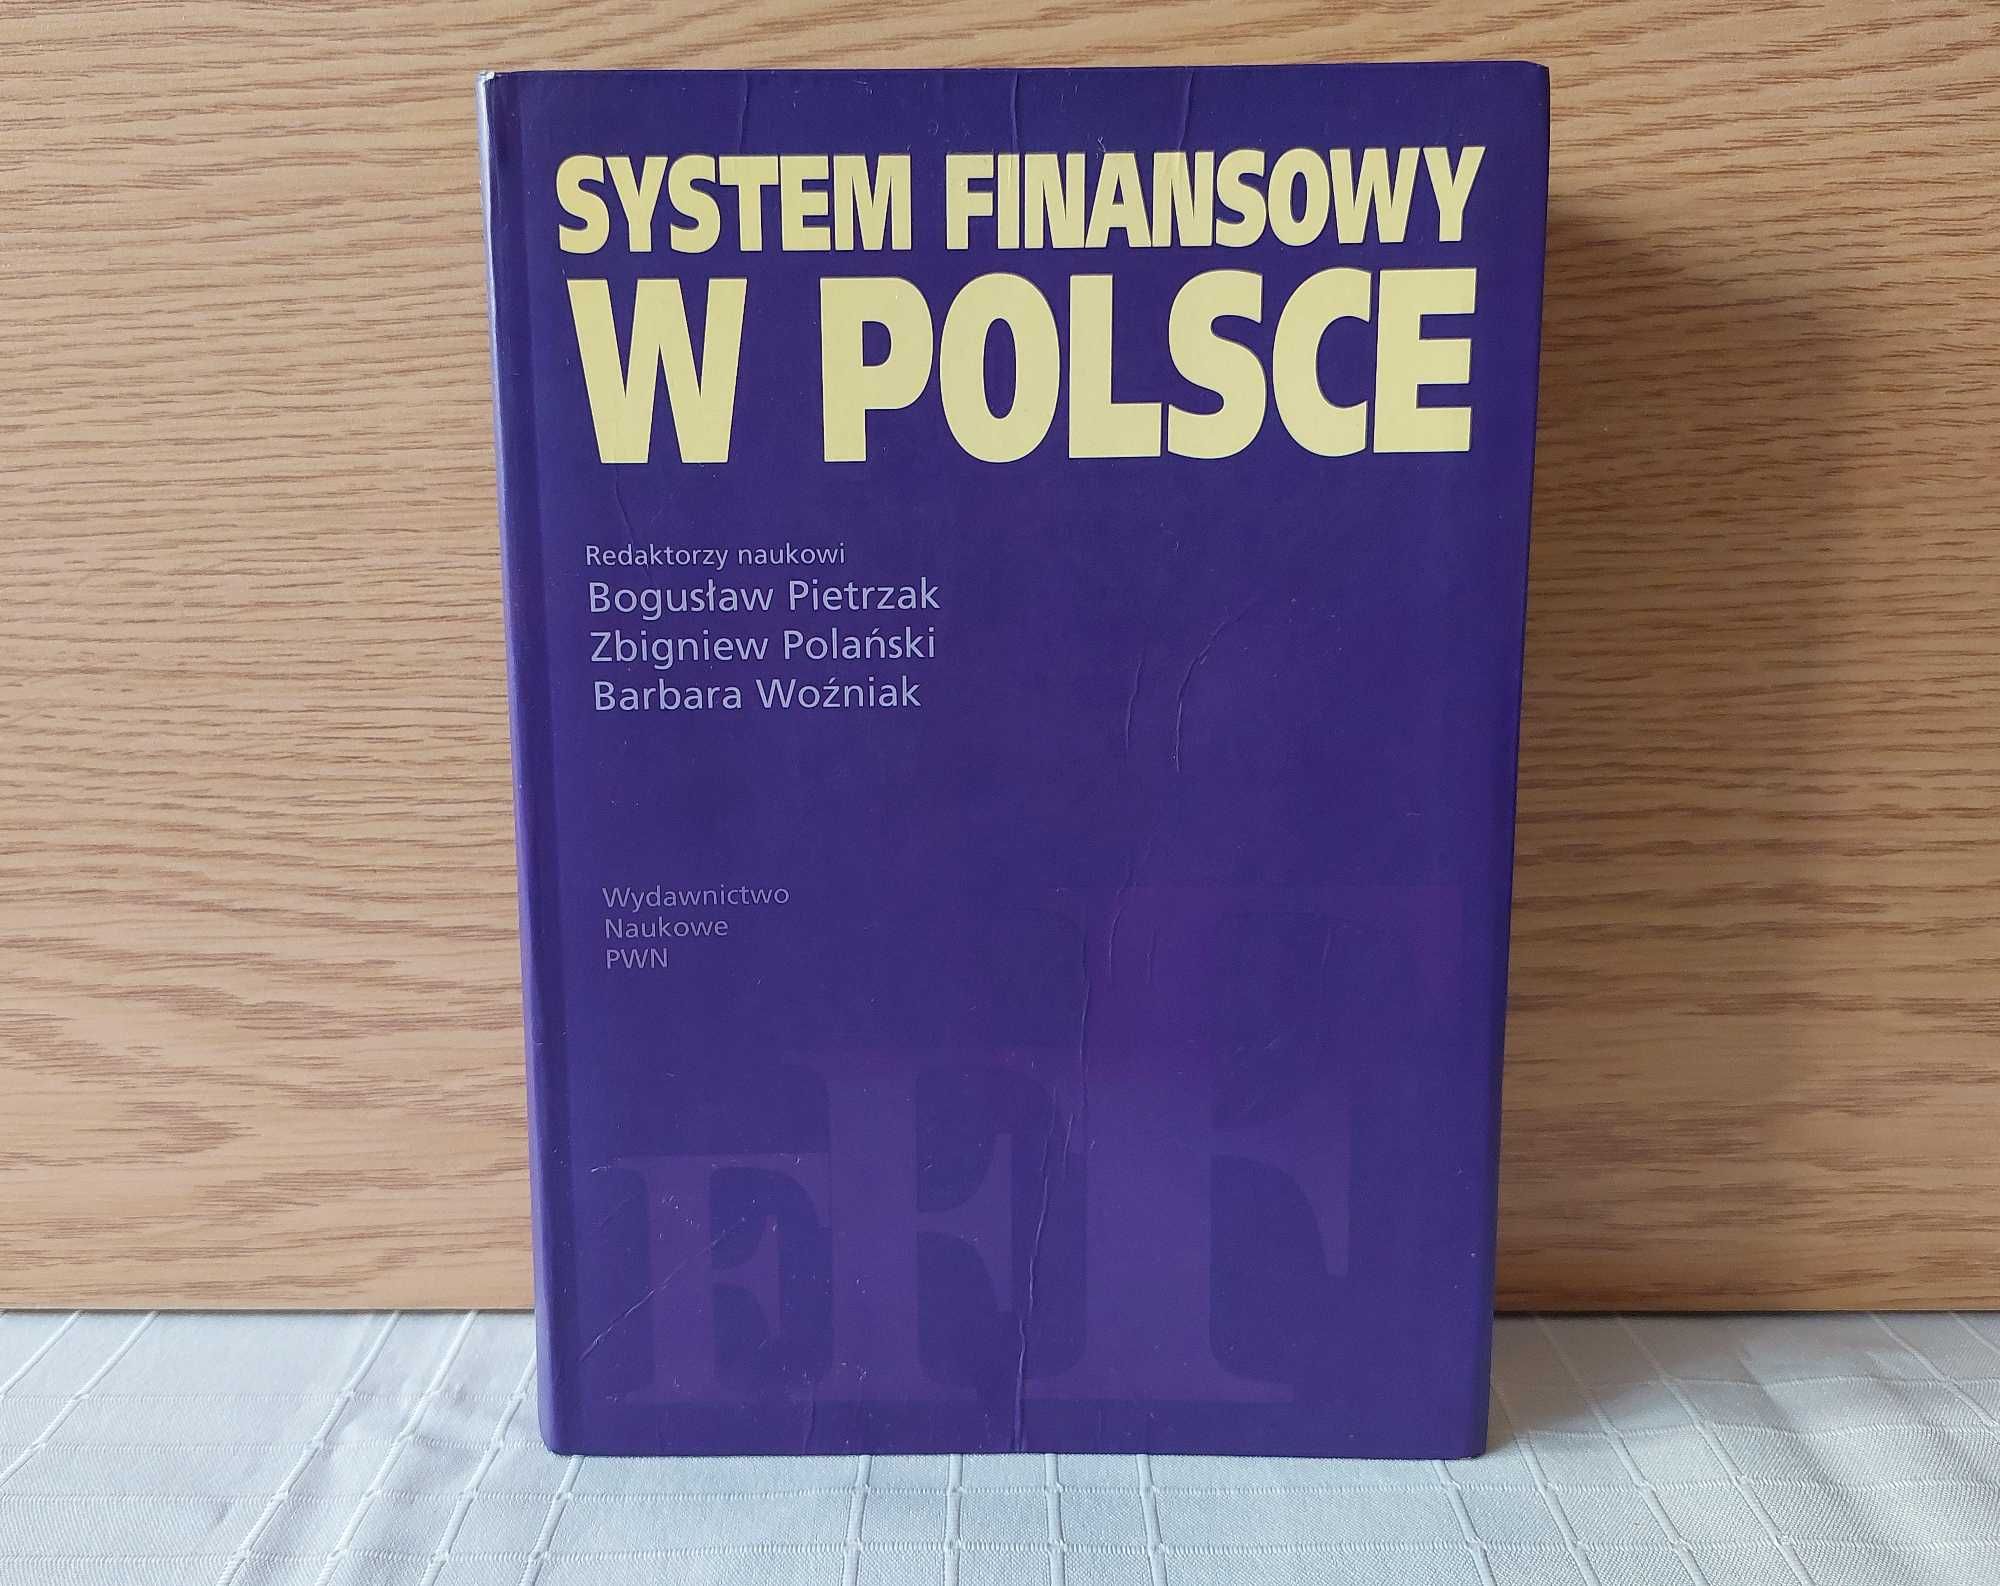 System finansowy w Polsce - Pietrzak, Polański, Woźniak (2004)